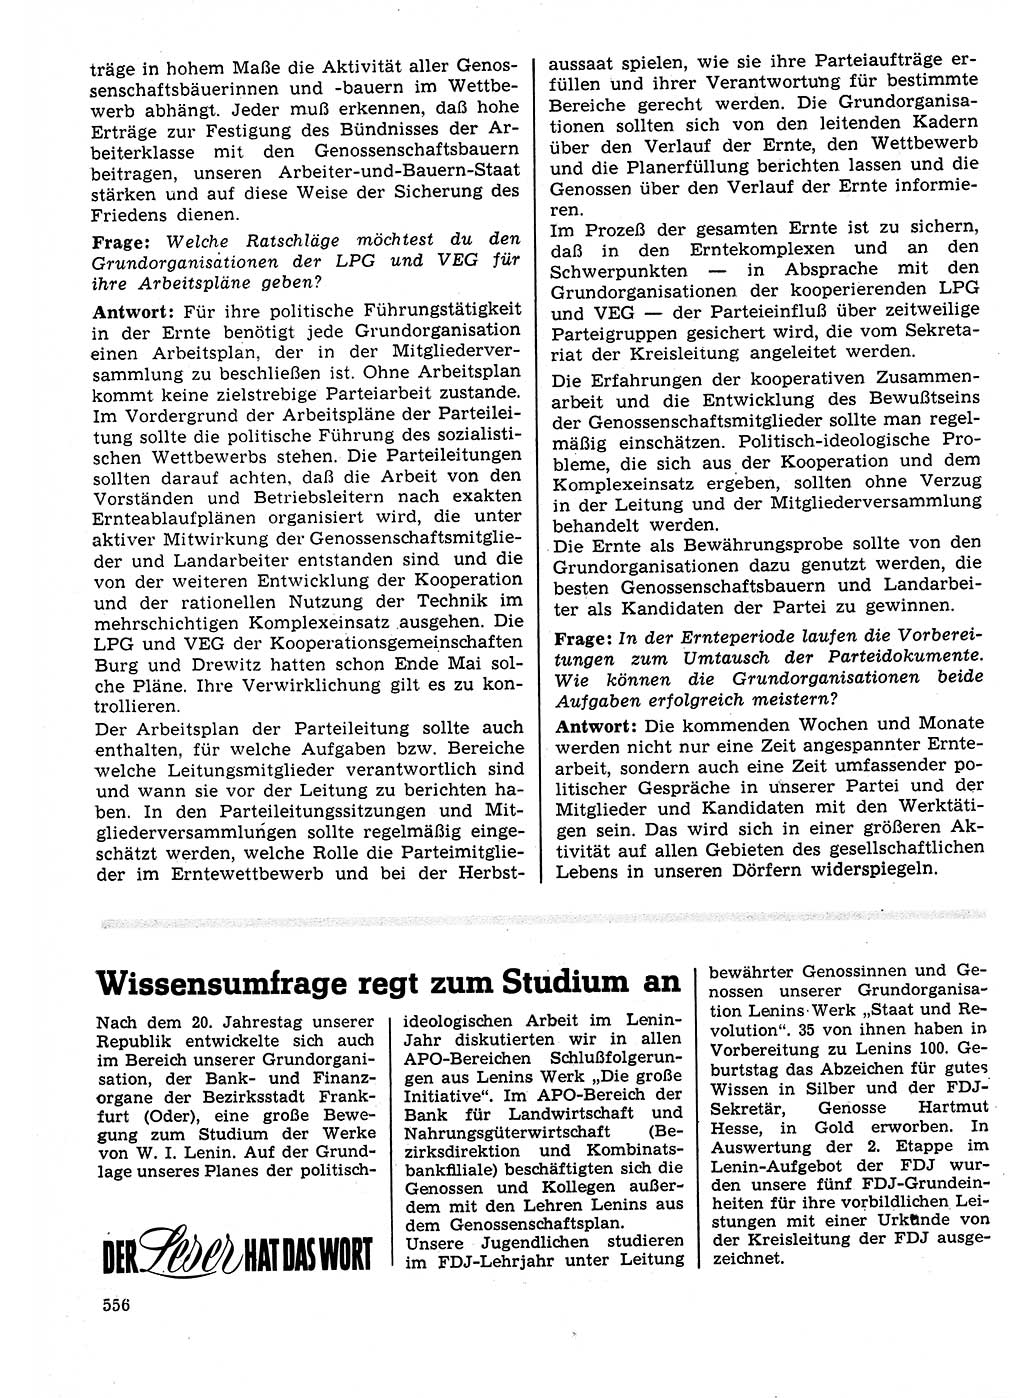 Neuer Weg (NW), Organ des Zentralkomitees (ZK) der SED (Sozialistische Einheitspartei Deutschlands) für Fragen des Parteilebens, 25. Jahrgang [Deutsche Demokratische Republik (DDR)] 1970, Seite 556 (NW ZK SED DDR 1970, S. 556)